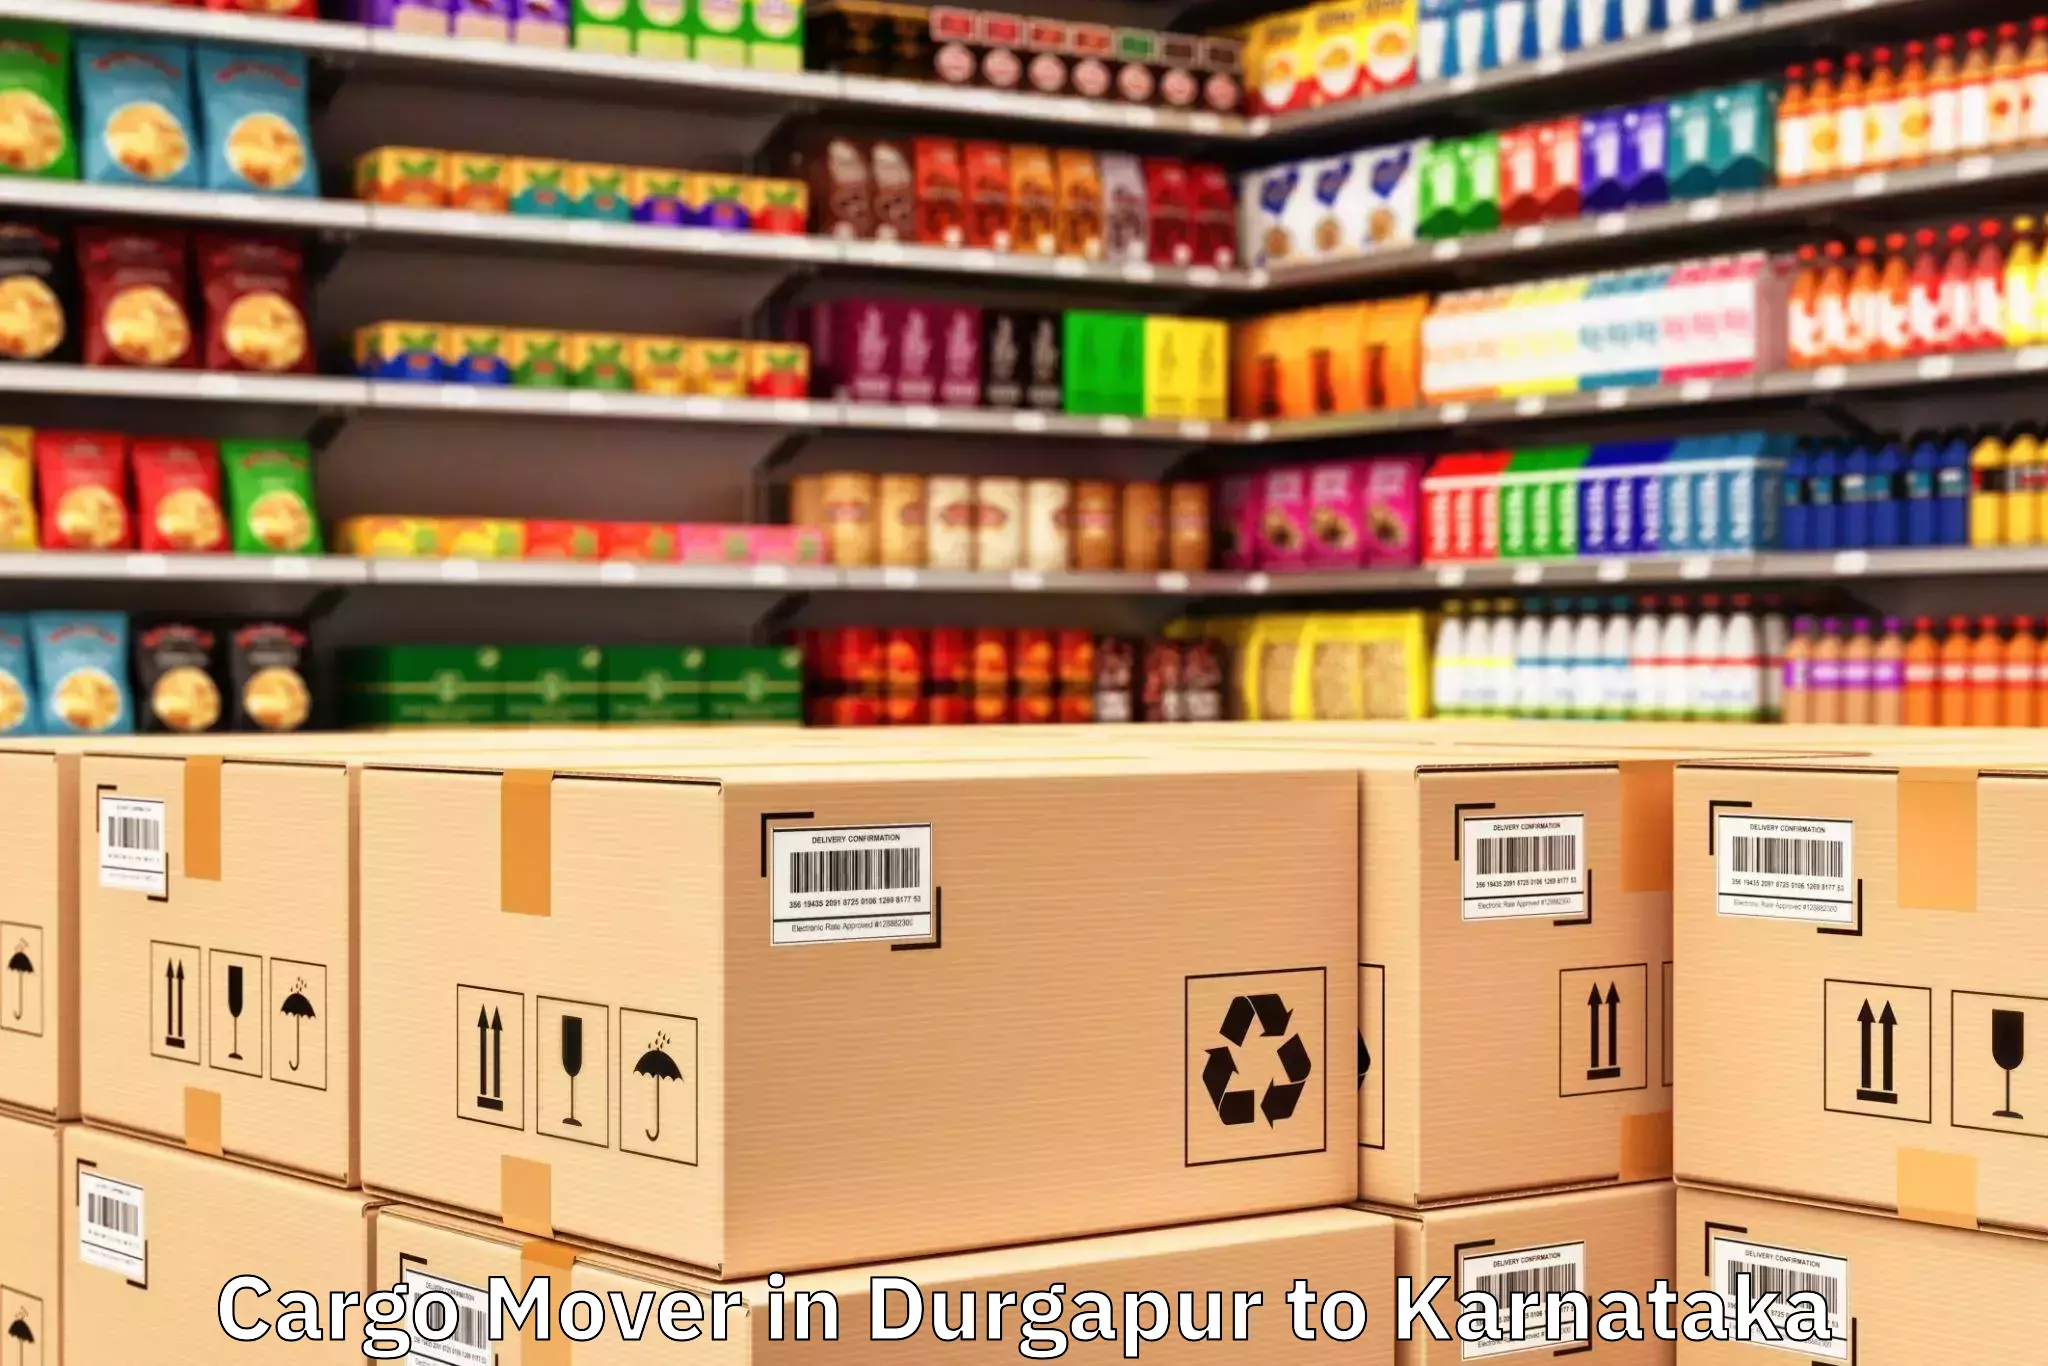 Get Durgapur to Hosanagar Cargo Mover